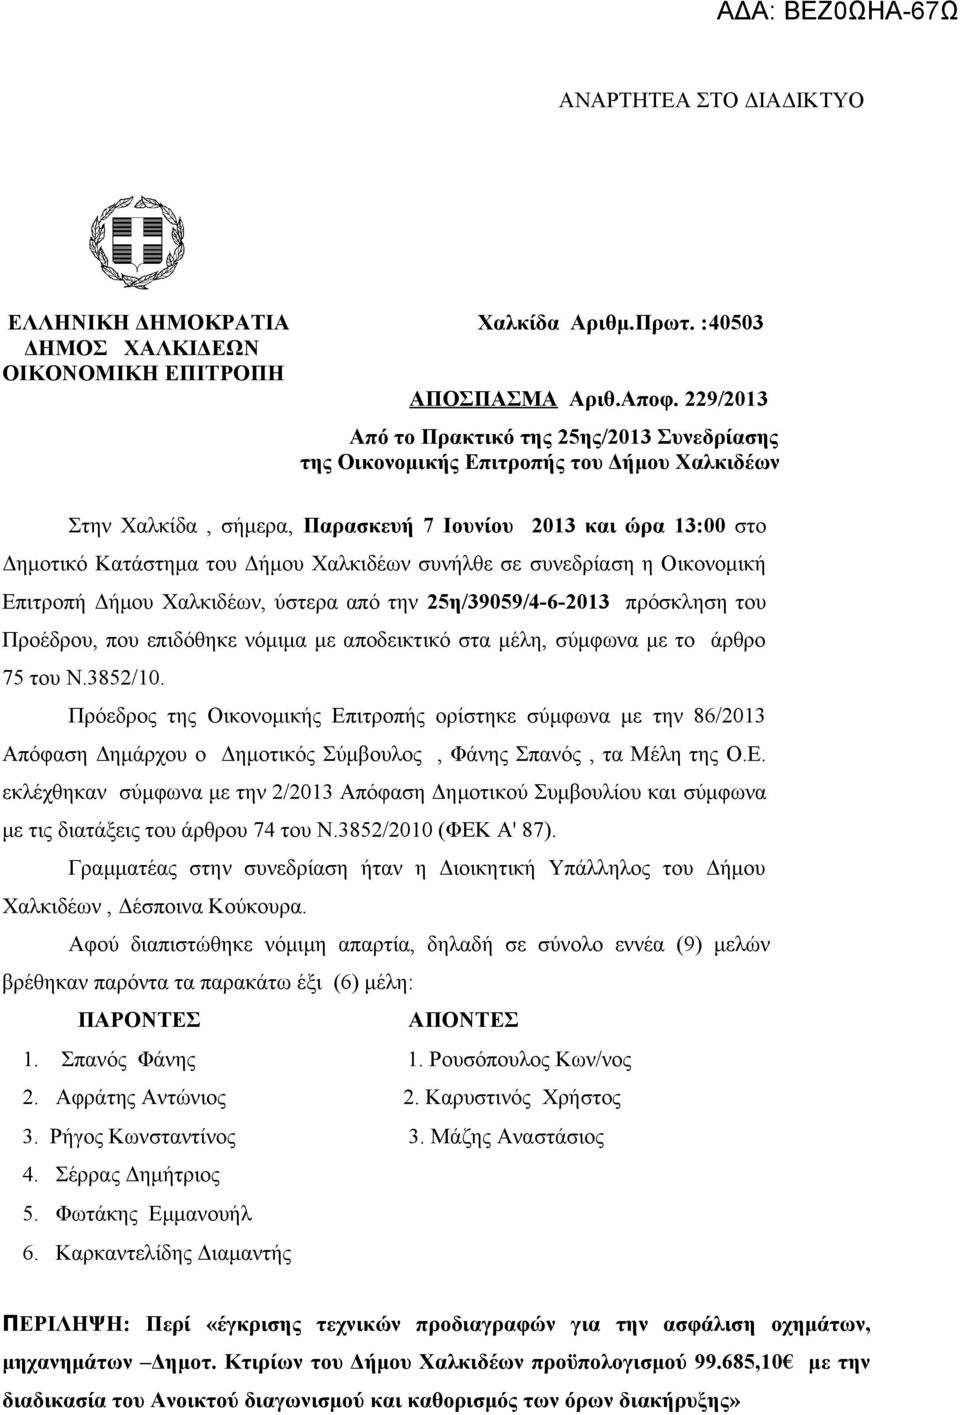 Χαλκιδέων συνήλθε σε συνεδρίαση η Οικονομική Επιτροπή Δήμου Χαλκιδέων, ύστερα από την 25η/39059/4-6-2013 πρόσκληση του Προέδρου, που επιδόθηκε νόμιμα με αποδεικτικό στα μέλη, σύμφωνα με το άρθρο 75